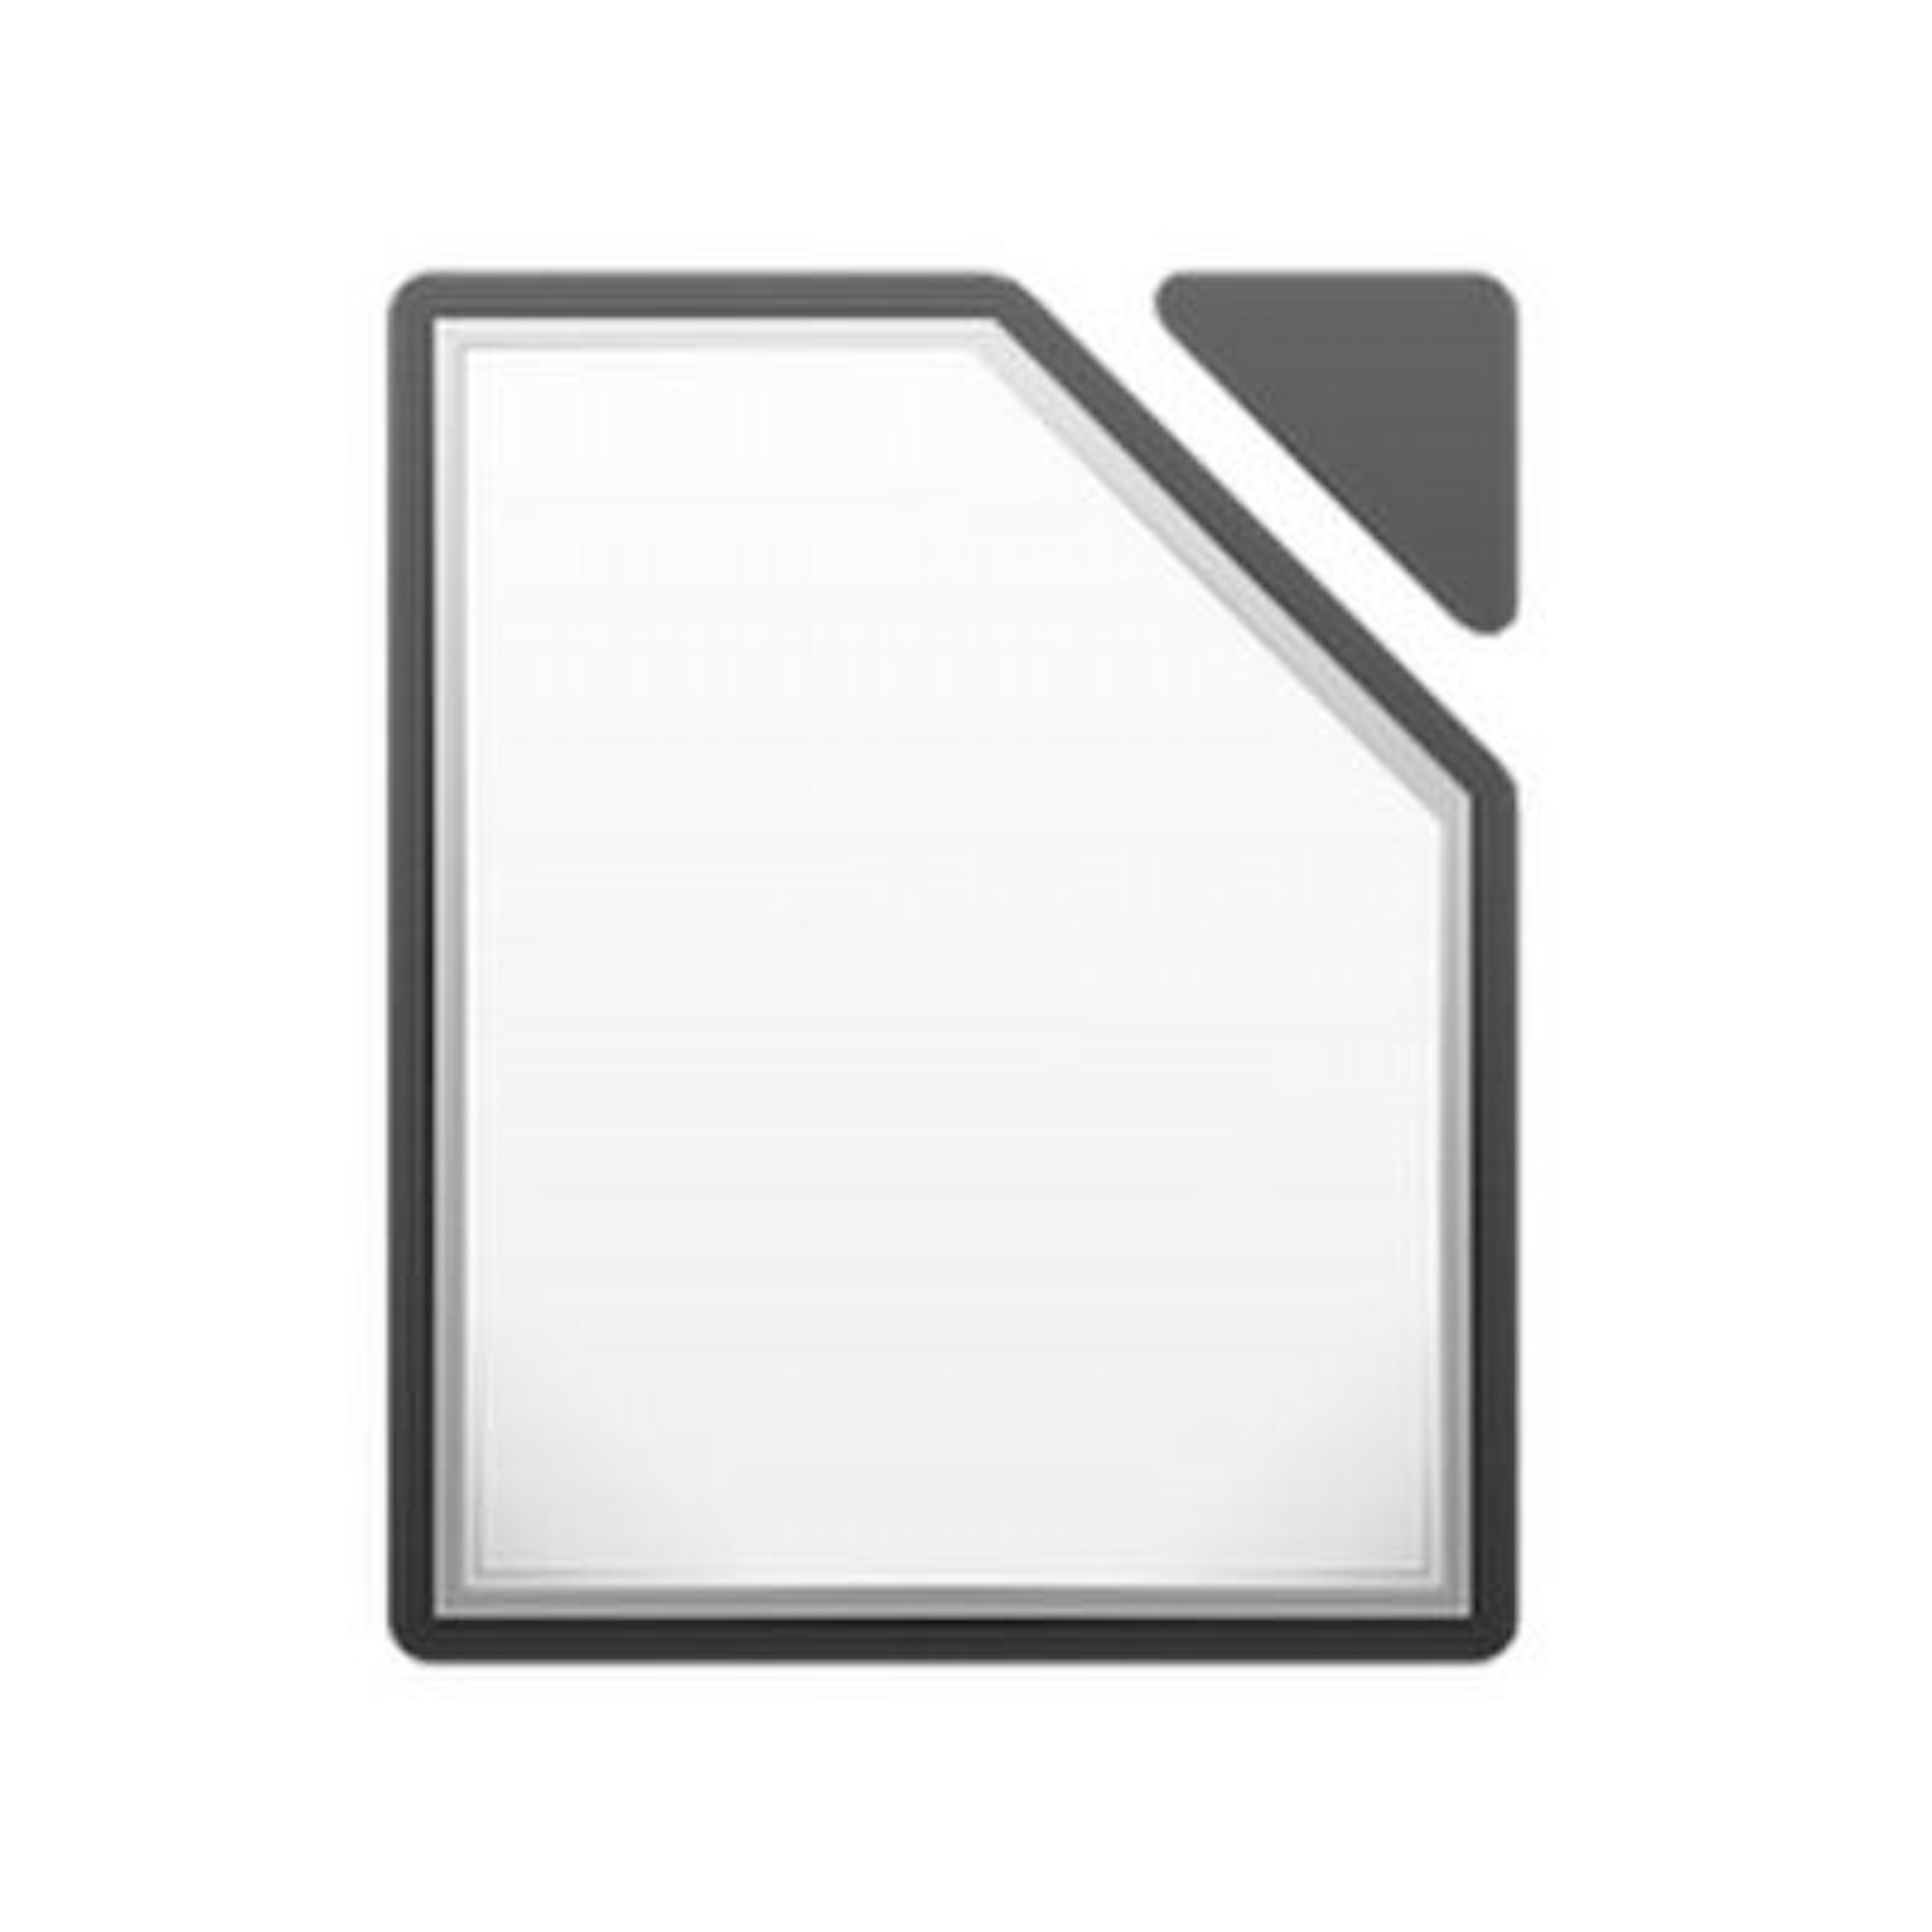 LibreOffice Logo